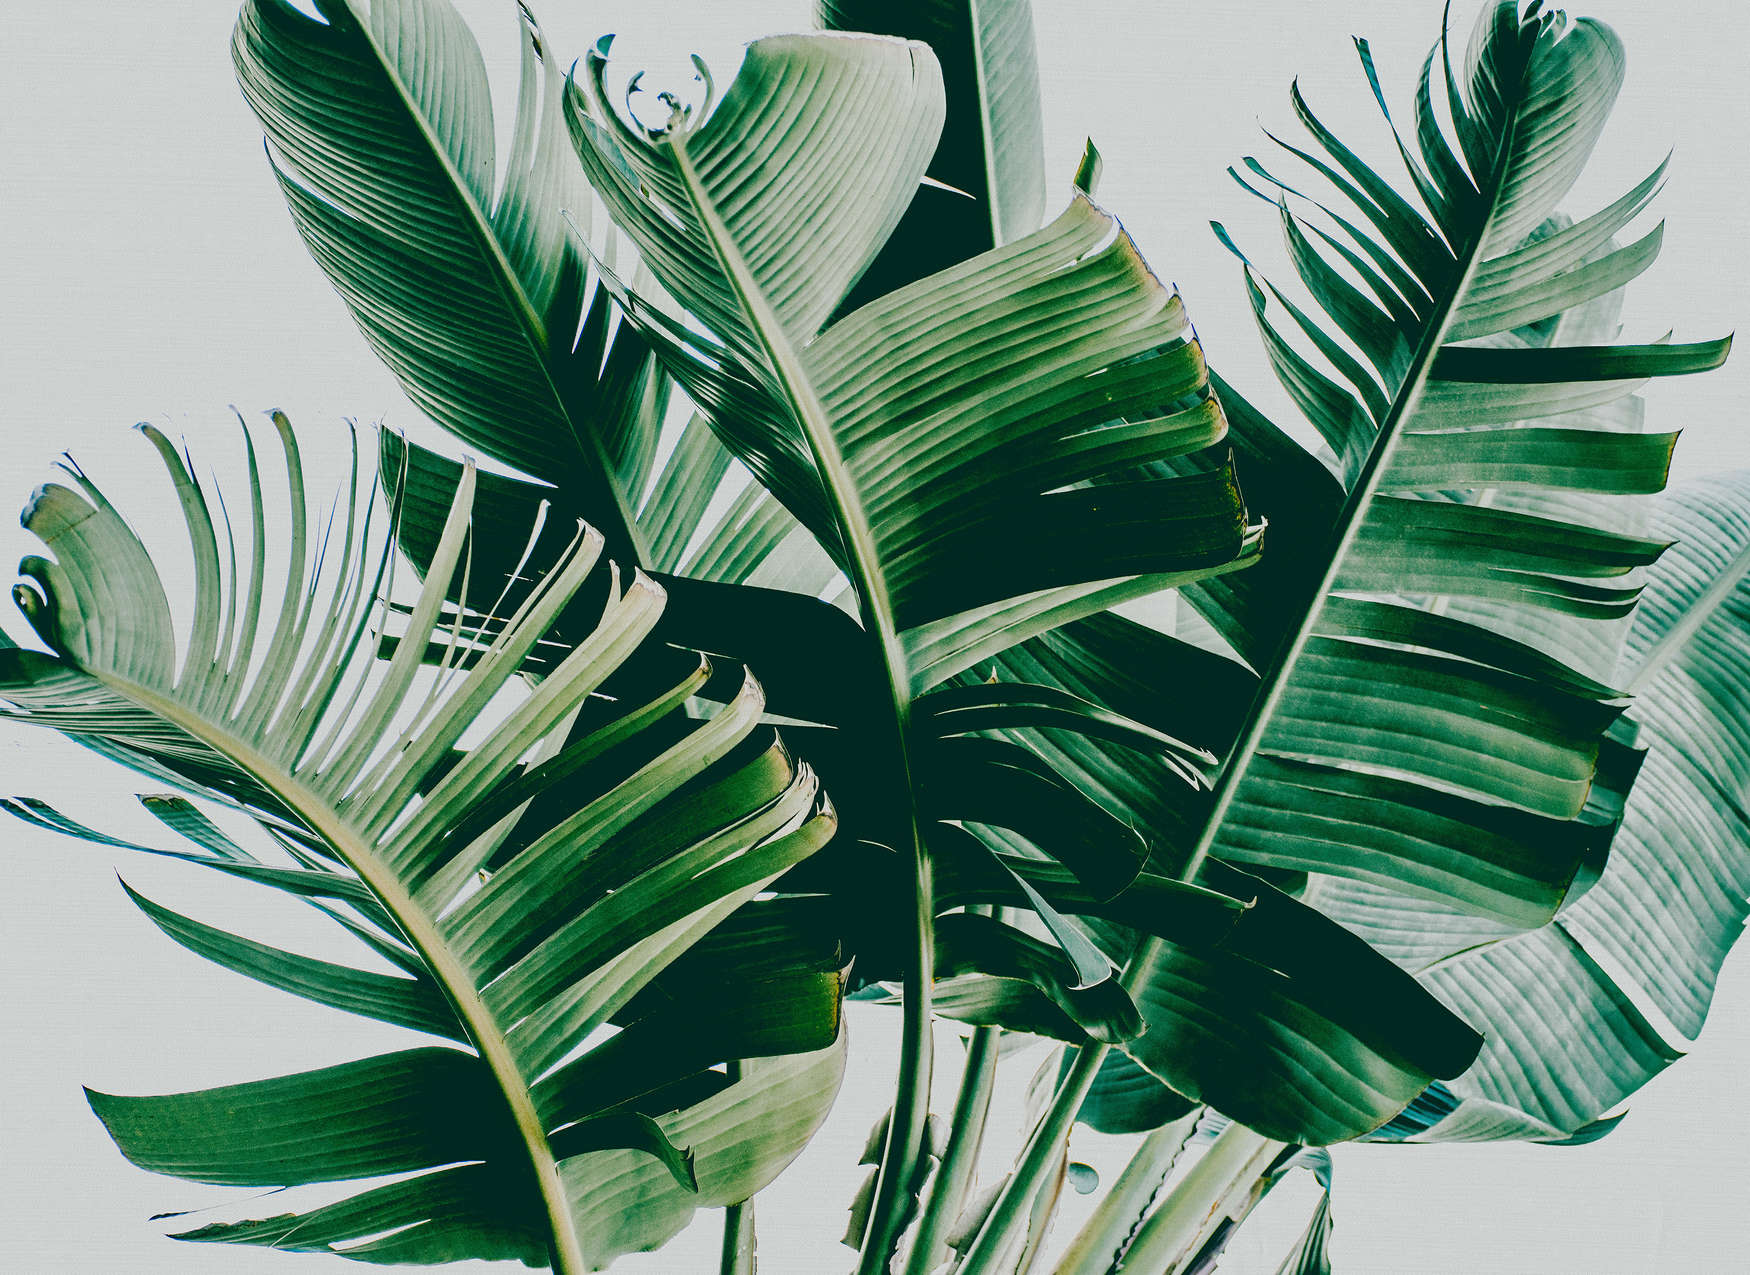             Fototapete mit Palmenblättern natürliches Motiv – Grün, Grau
        